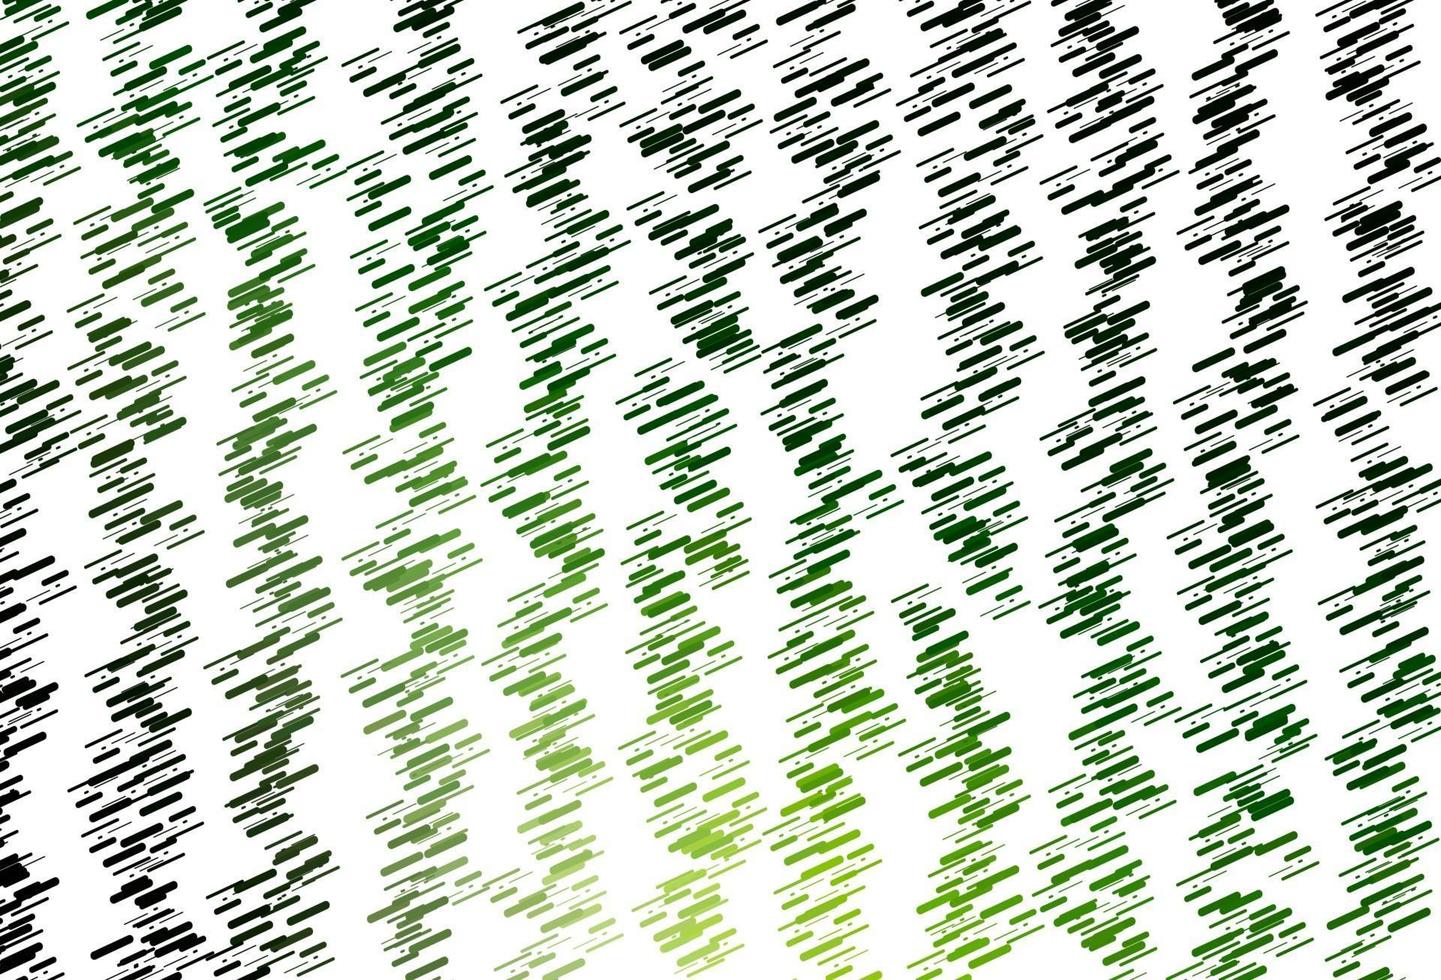 padrão de vetor verde claro com linhas estreitas.